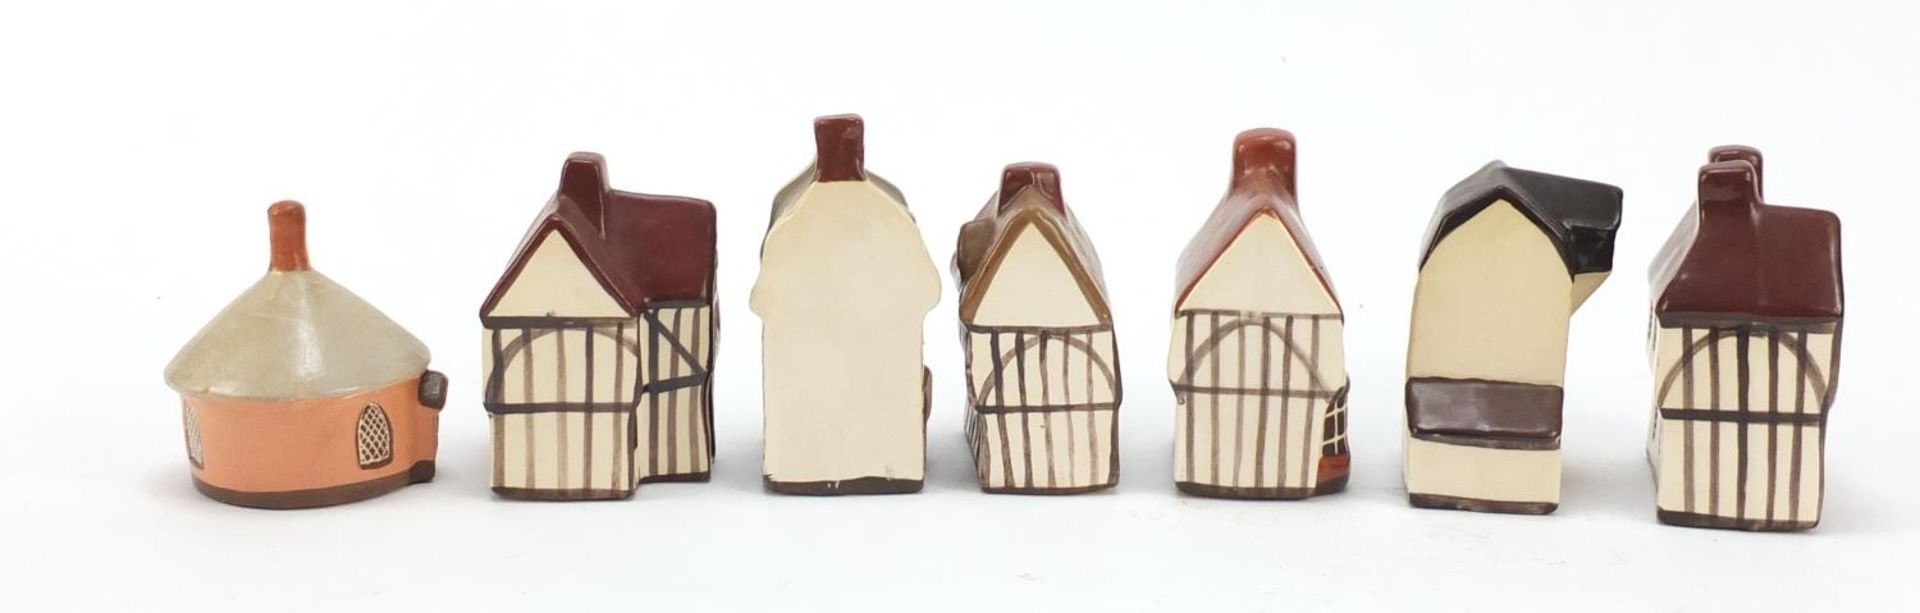 Seven Mudlen End Studio miniature cottages, the largest 9cm high - Bild 6 aus 10